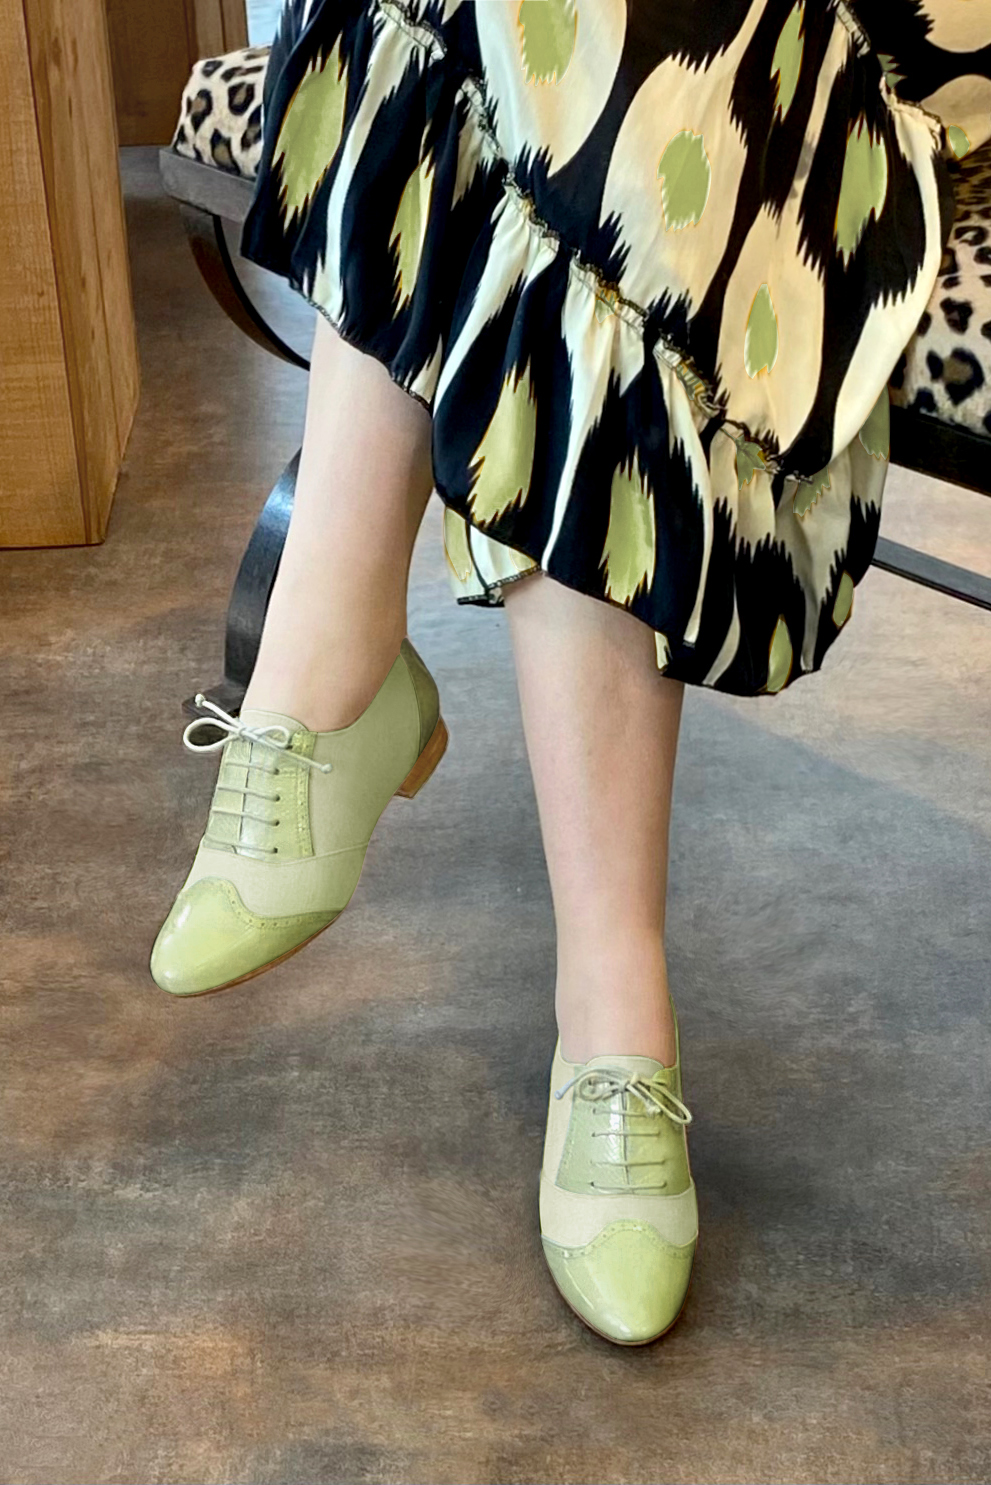 Chaussure femme à lacets : Derby original couleur vert tilleul.. Vue porté - Florence KOOIJMAN